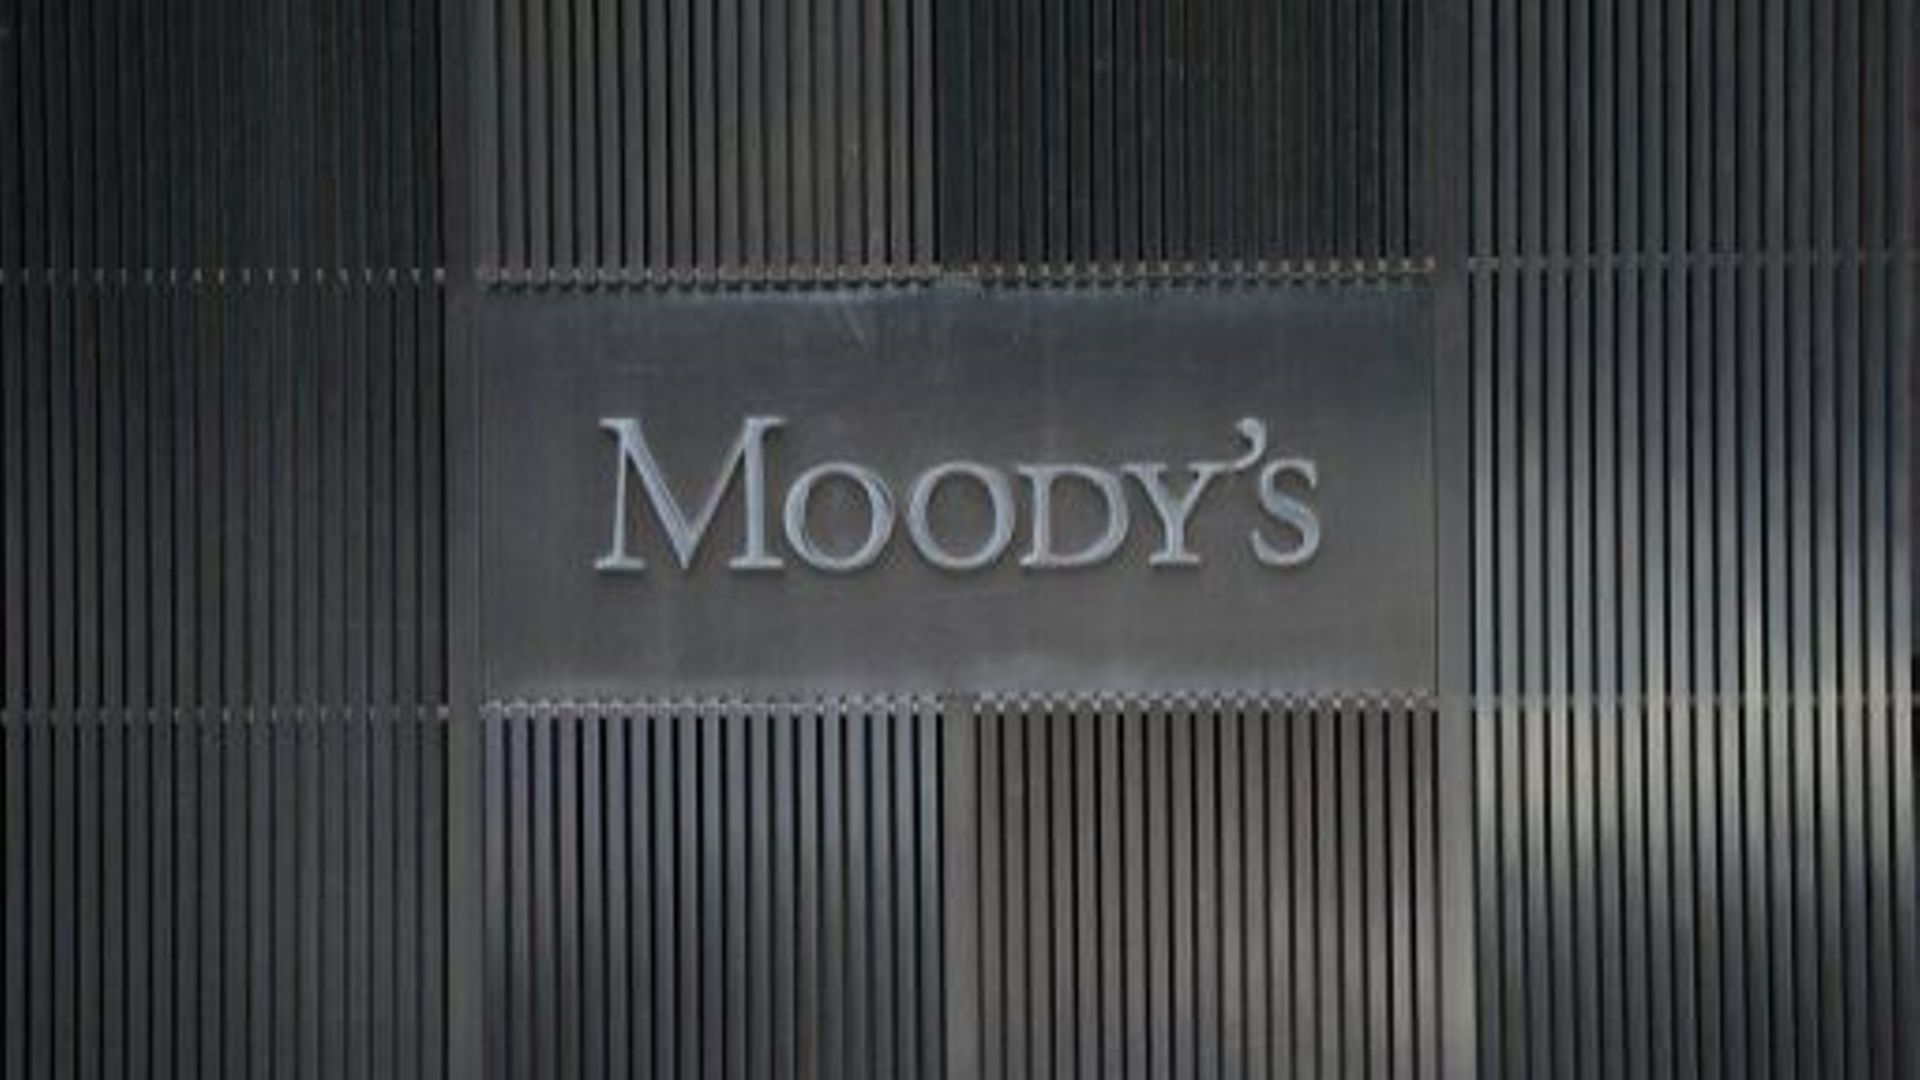 La dette croate rejoint le groupe des investissements spéculatifs selon Moody's